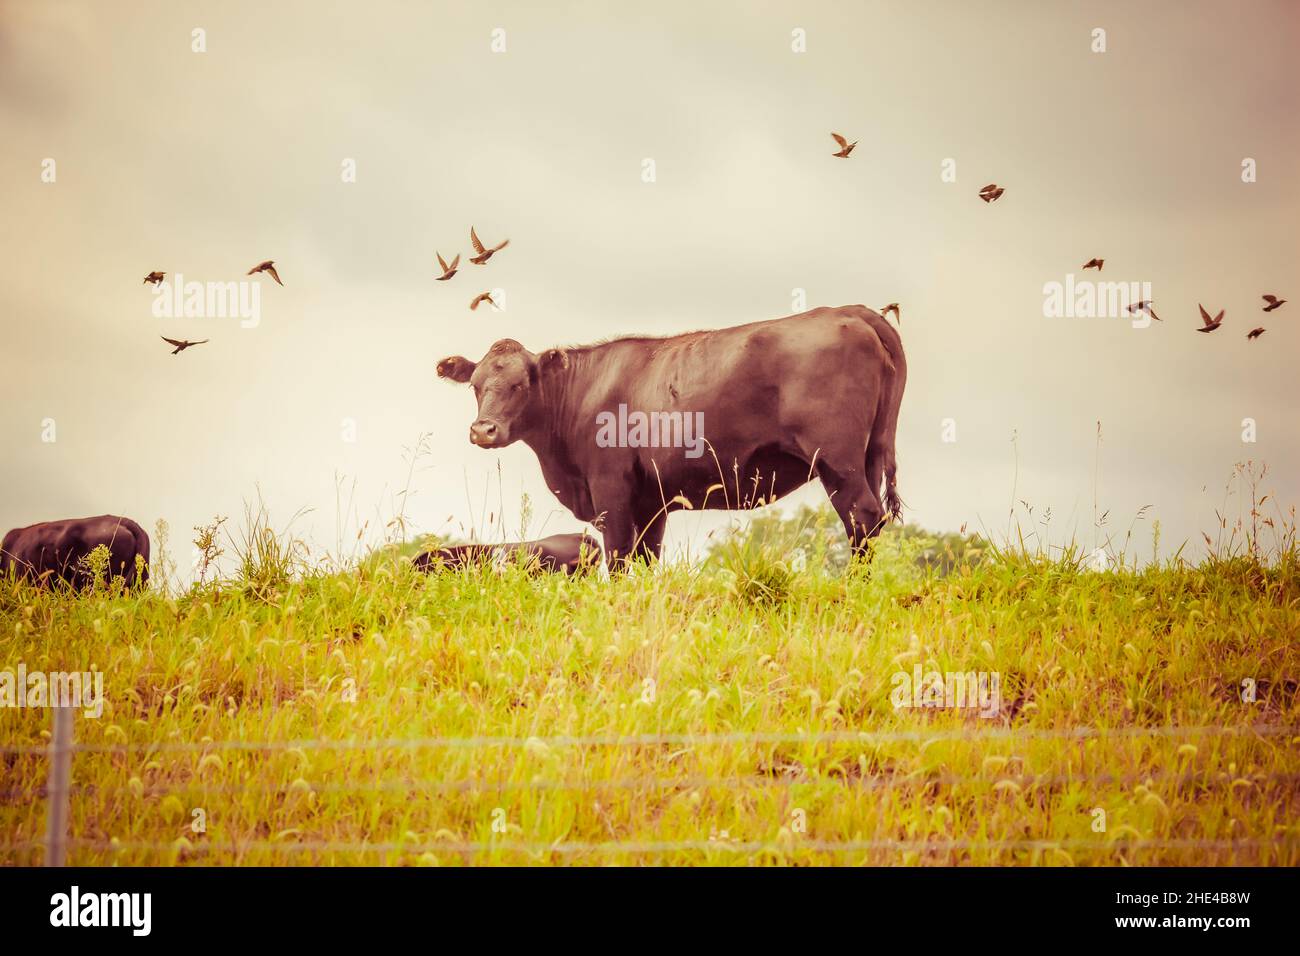 Bellissimo scatto di una mucca nera in un pascolo con uccelli erba aspetto vintage Foto Stock